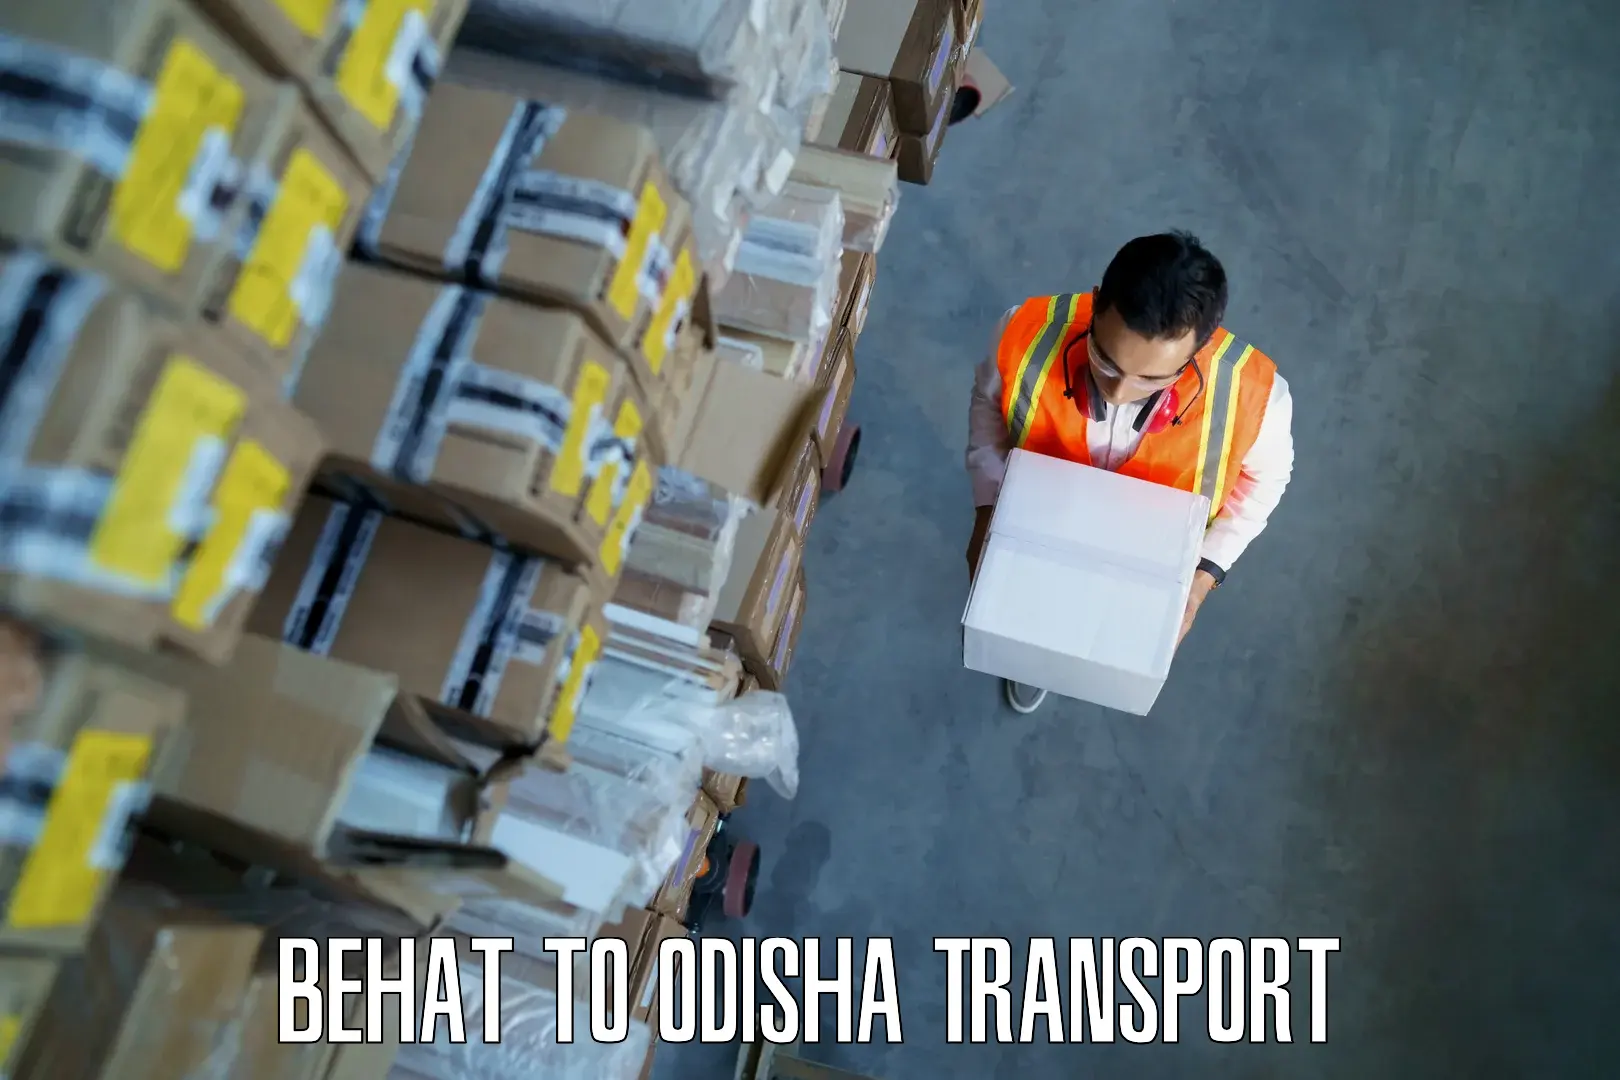 Furniture transport service Behat to Saintala